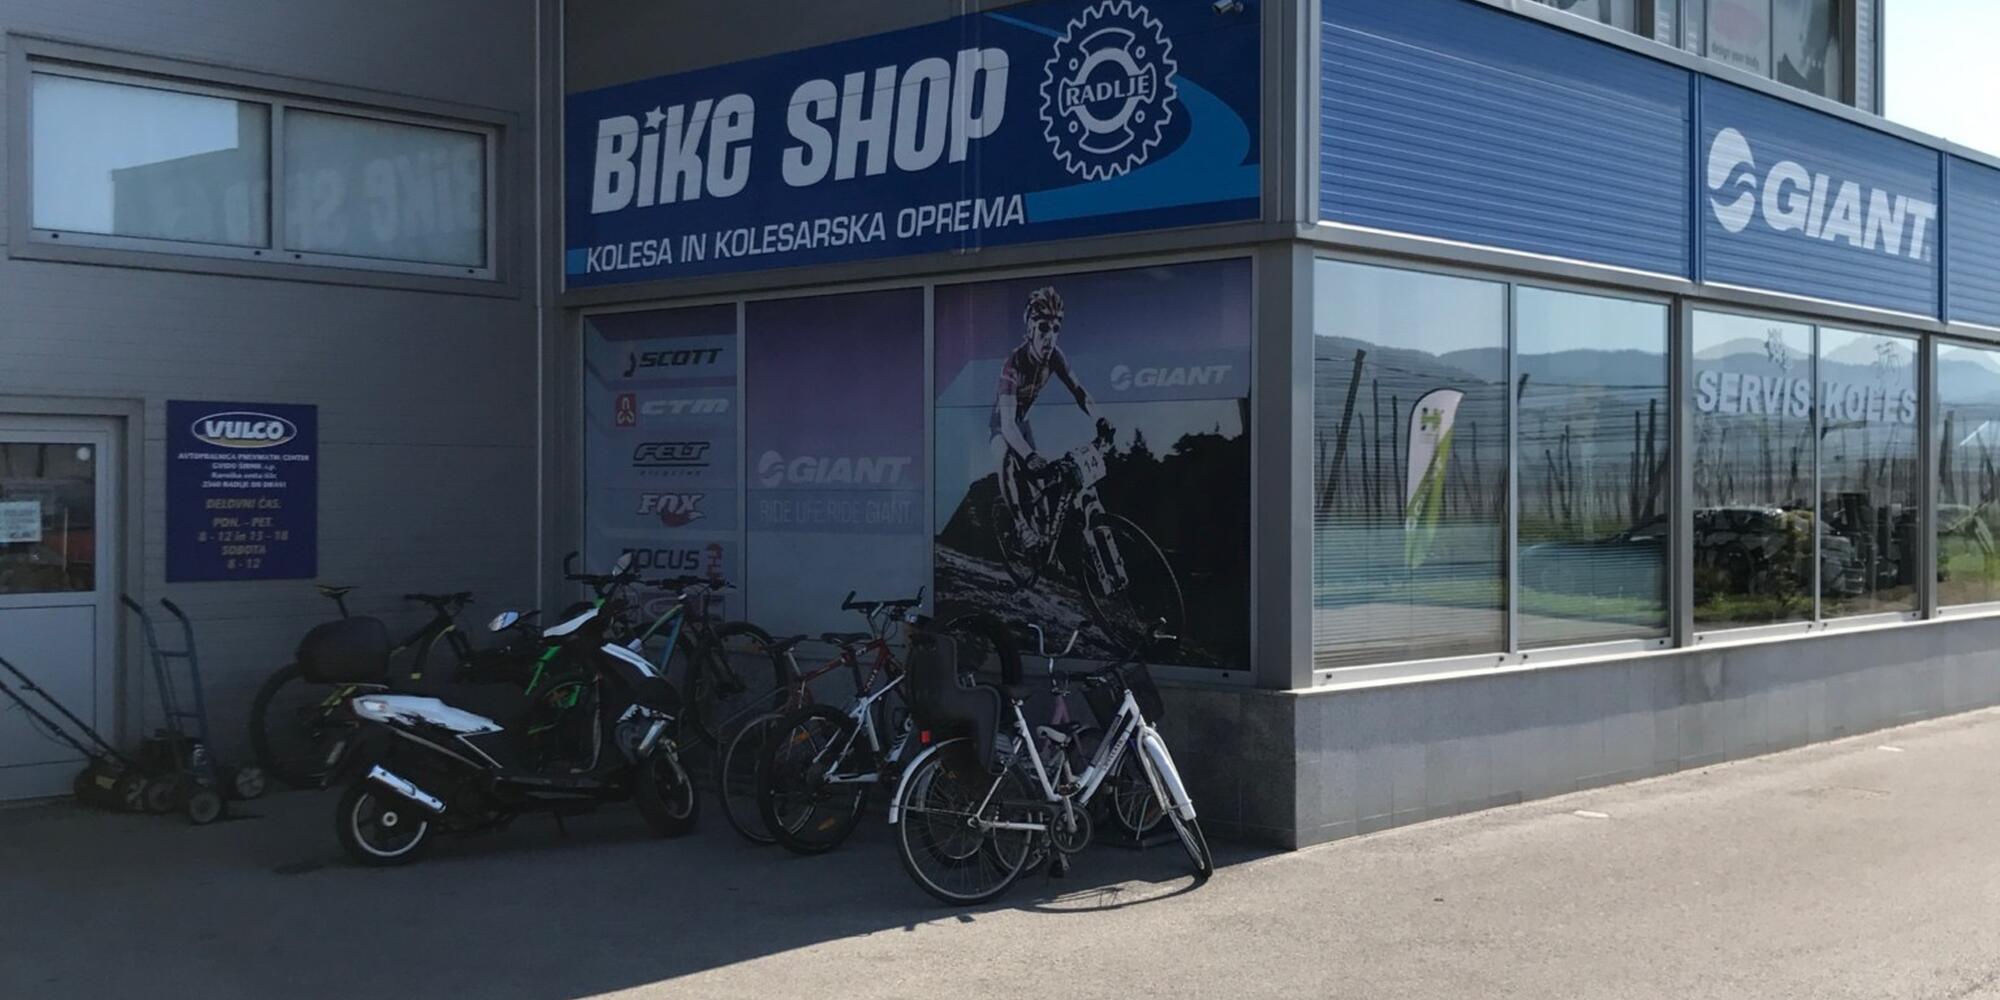 Bike shop Radlje